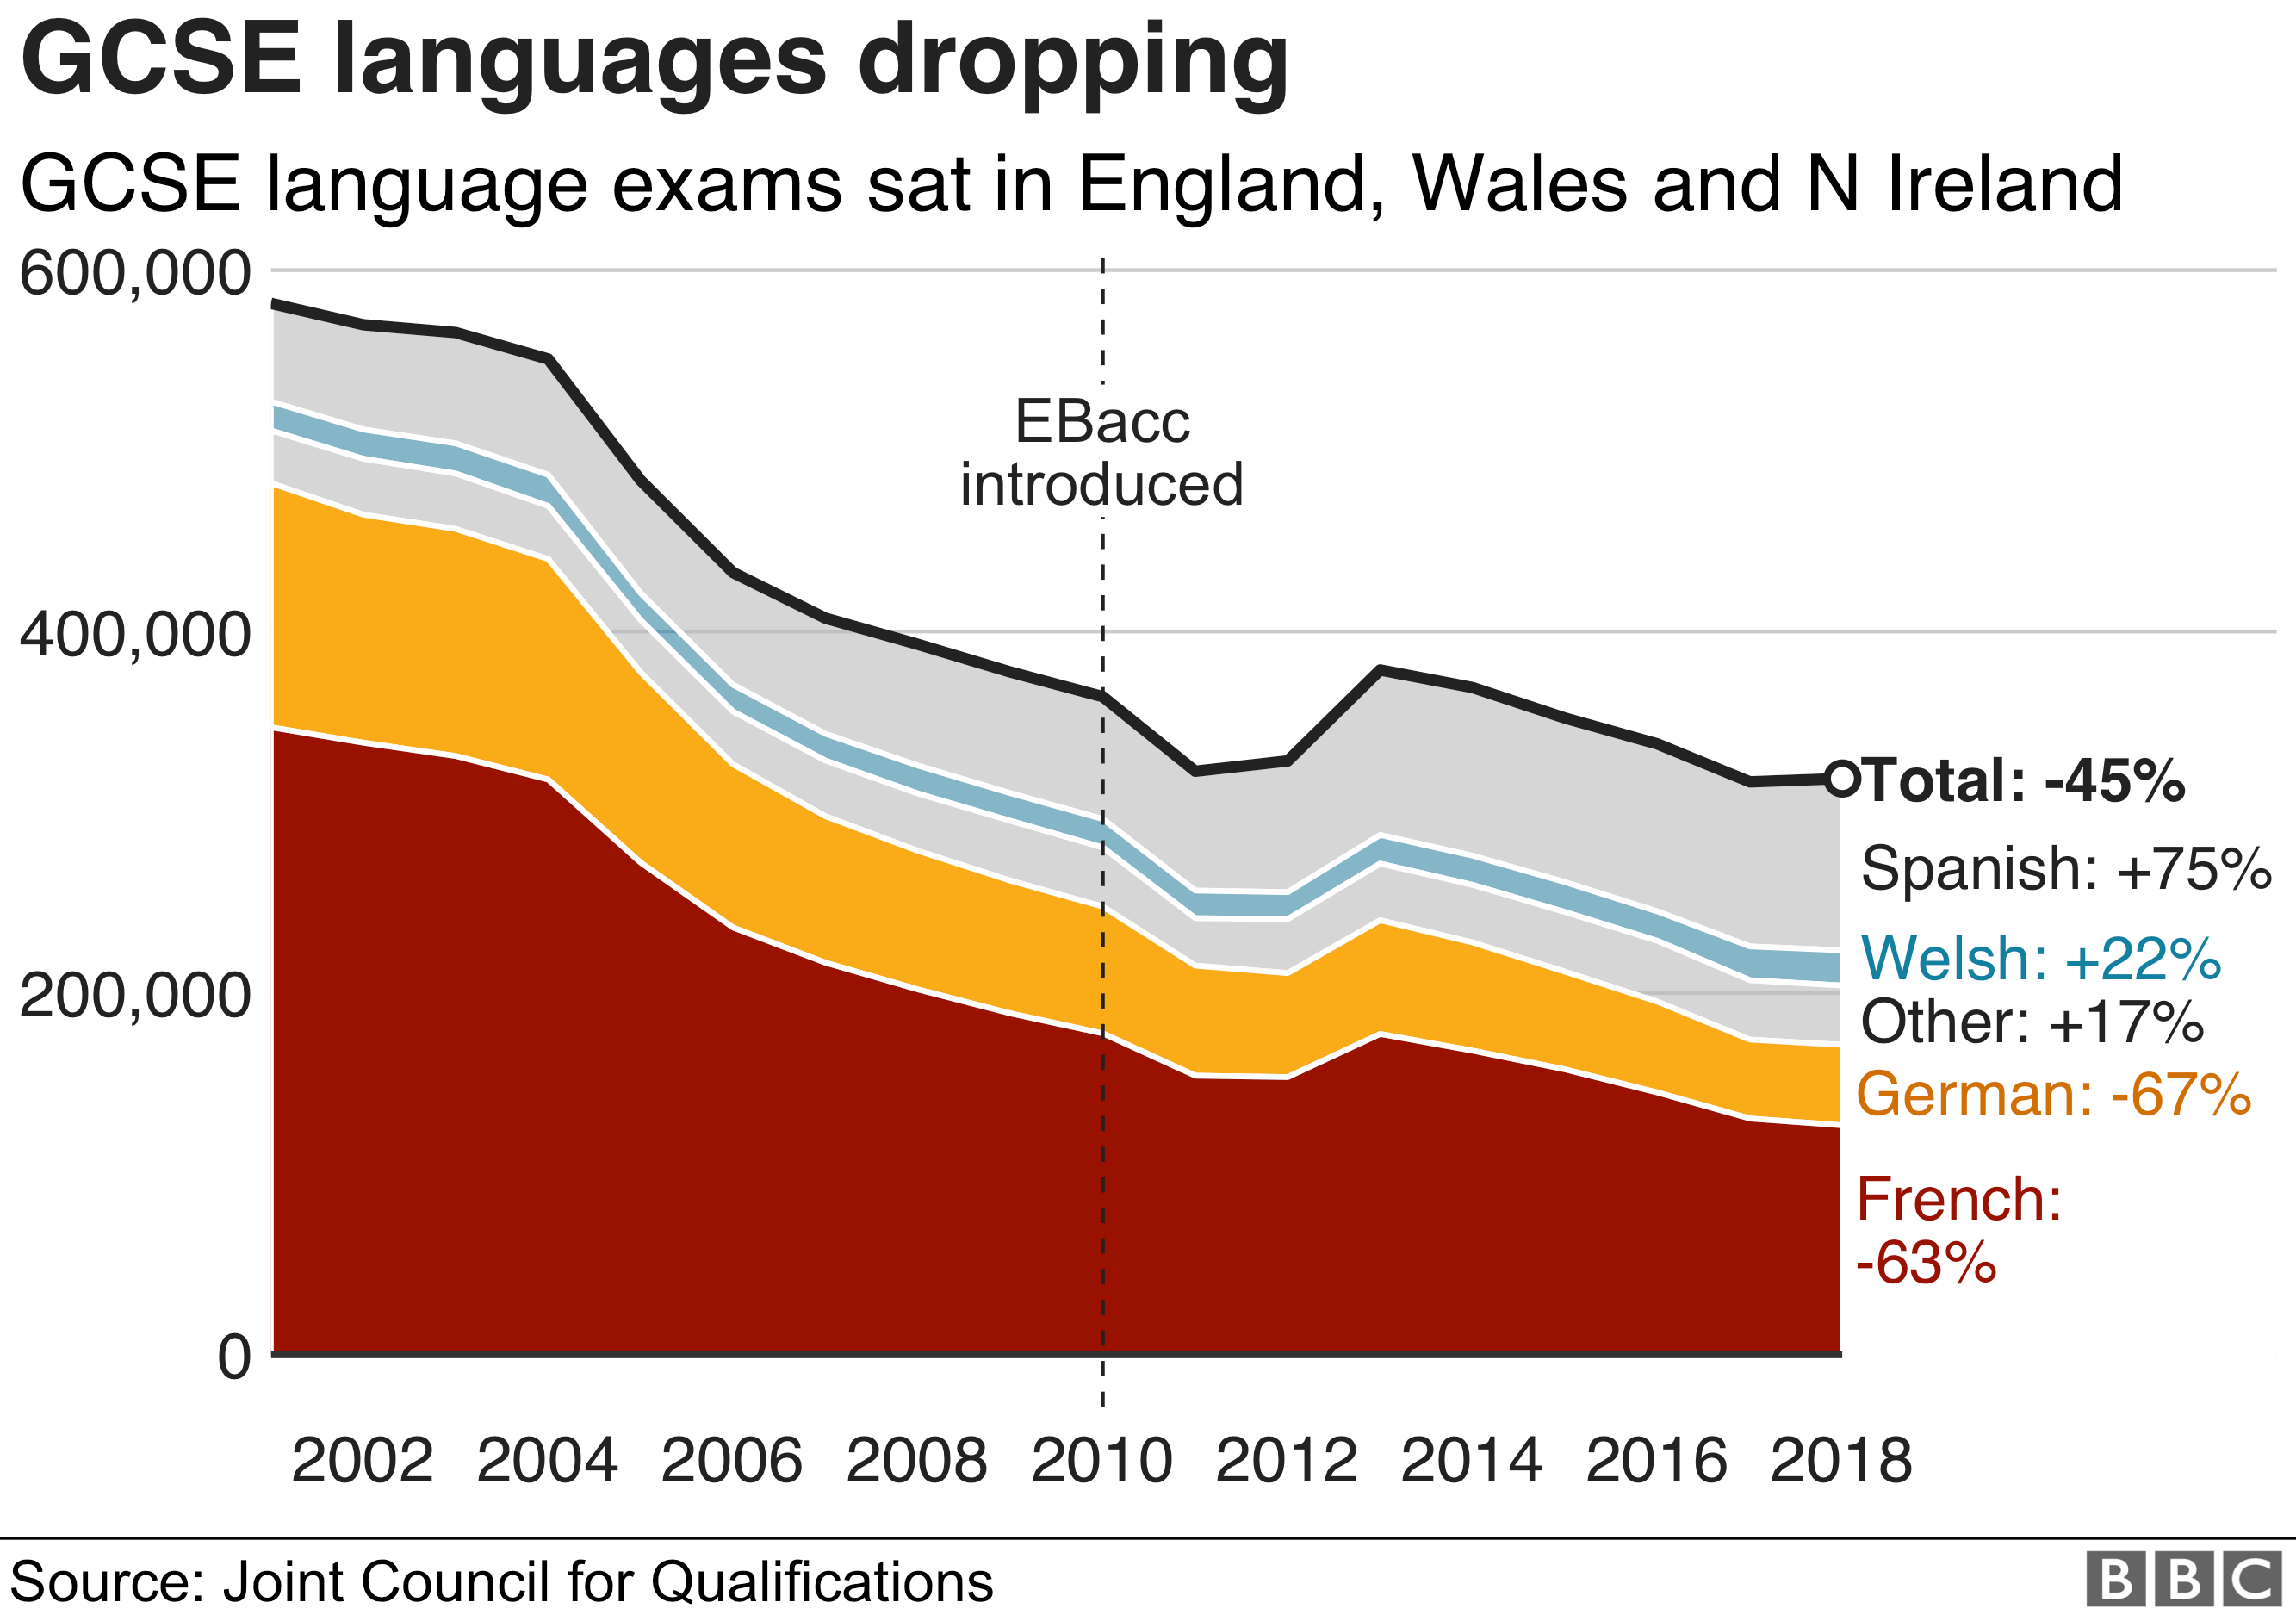 диаграмма, показывающая, как сокращаются языки GCSE в Англии, Уэльсе и Северной Ирландии - общий показатель 45%, а немецкий и французский снизились больше всего на 67% и 63%